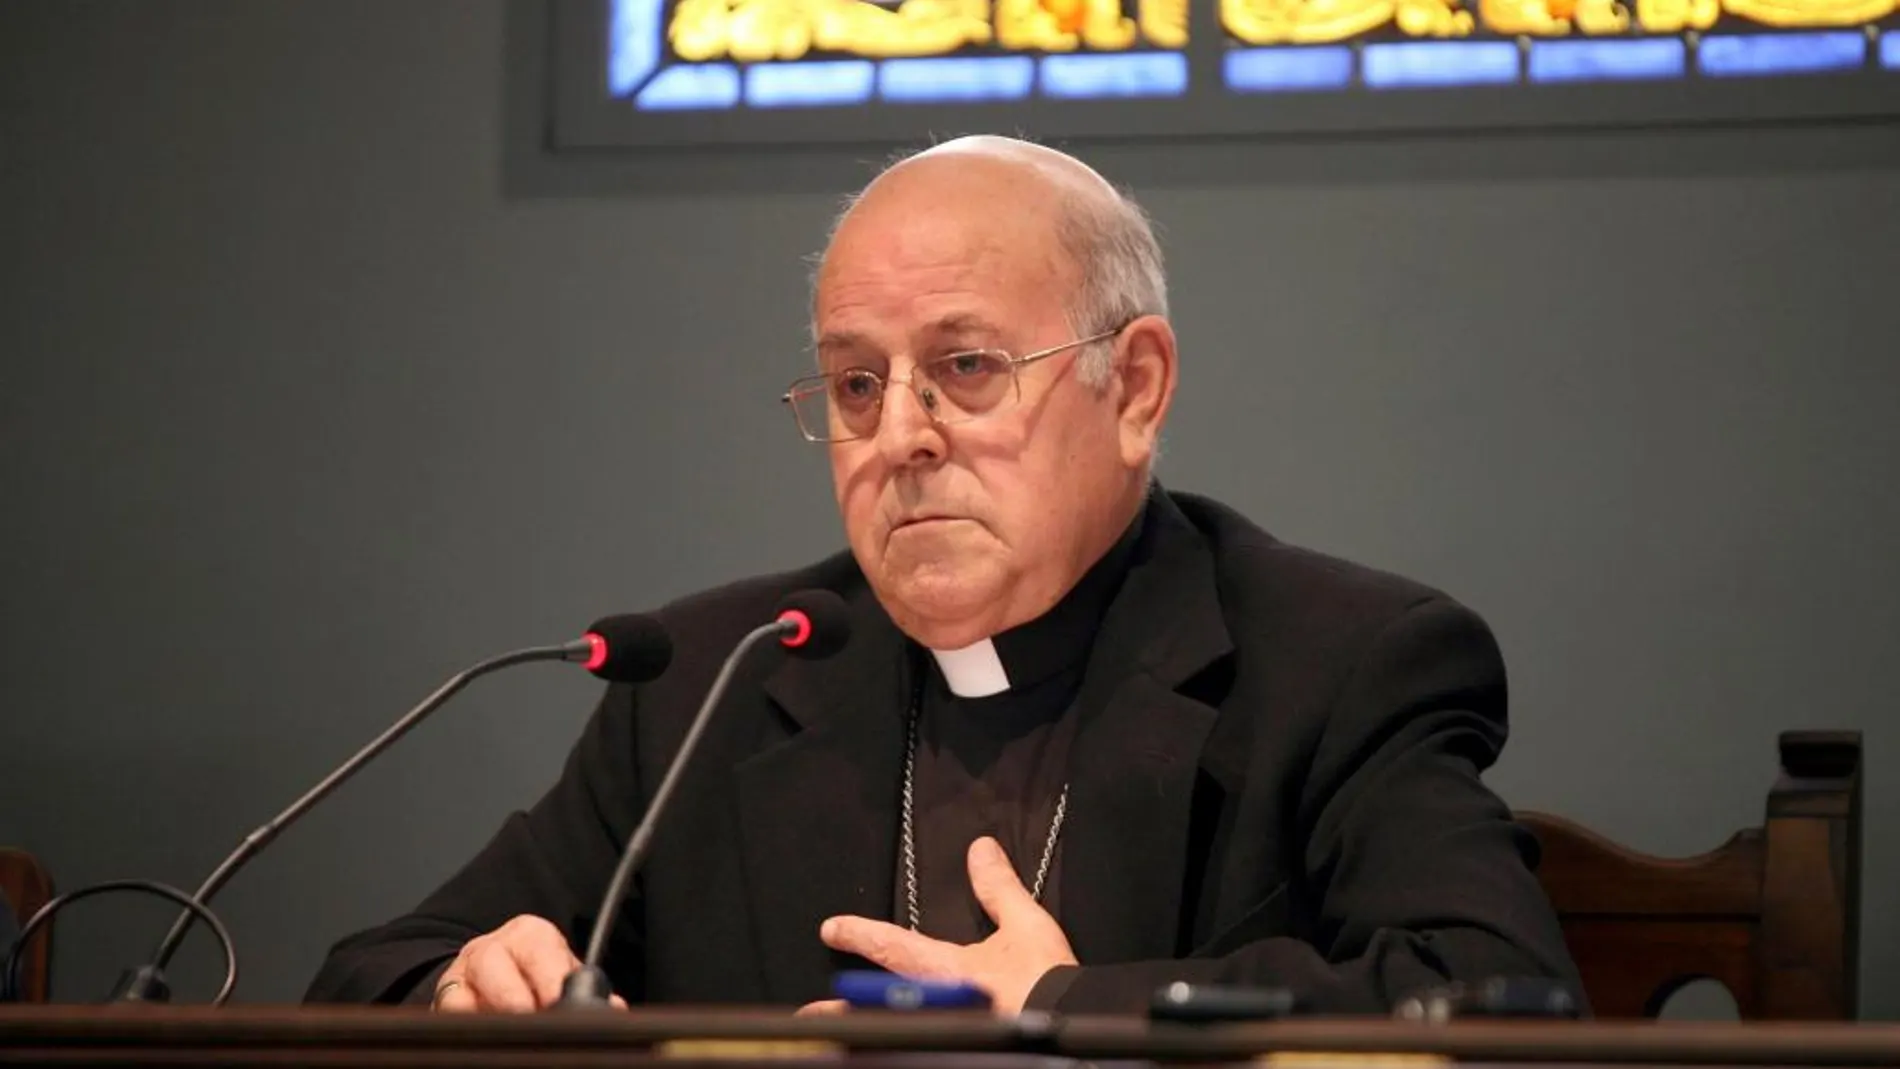 El Papa nombra a Ricardo Blázquez miembro de la Congregación para las Iglesias Orientales